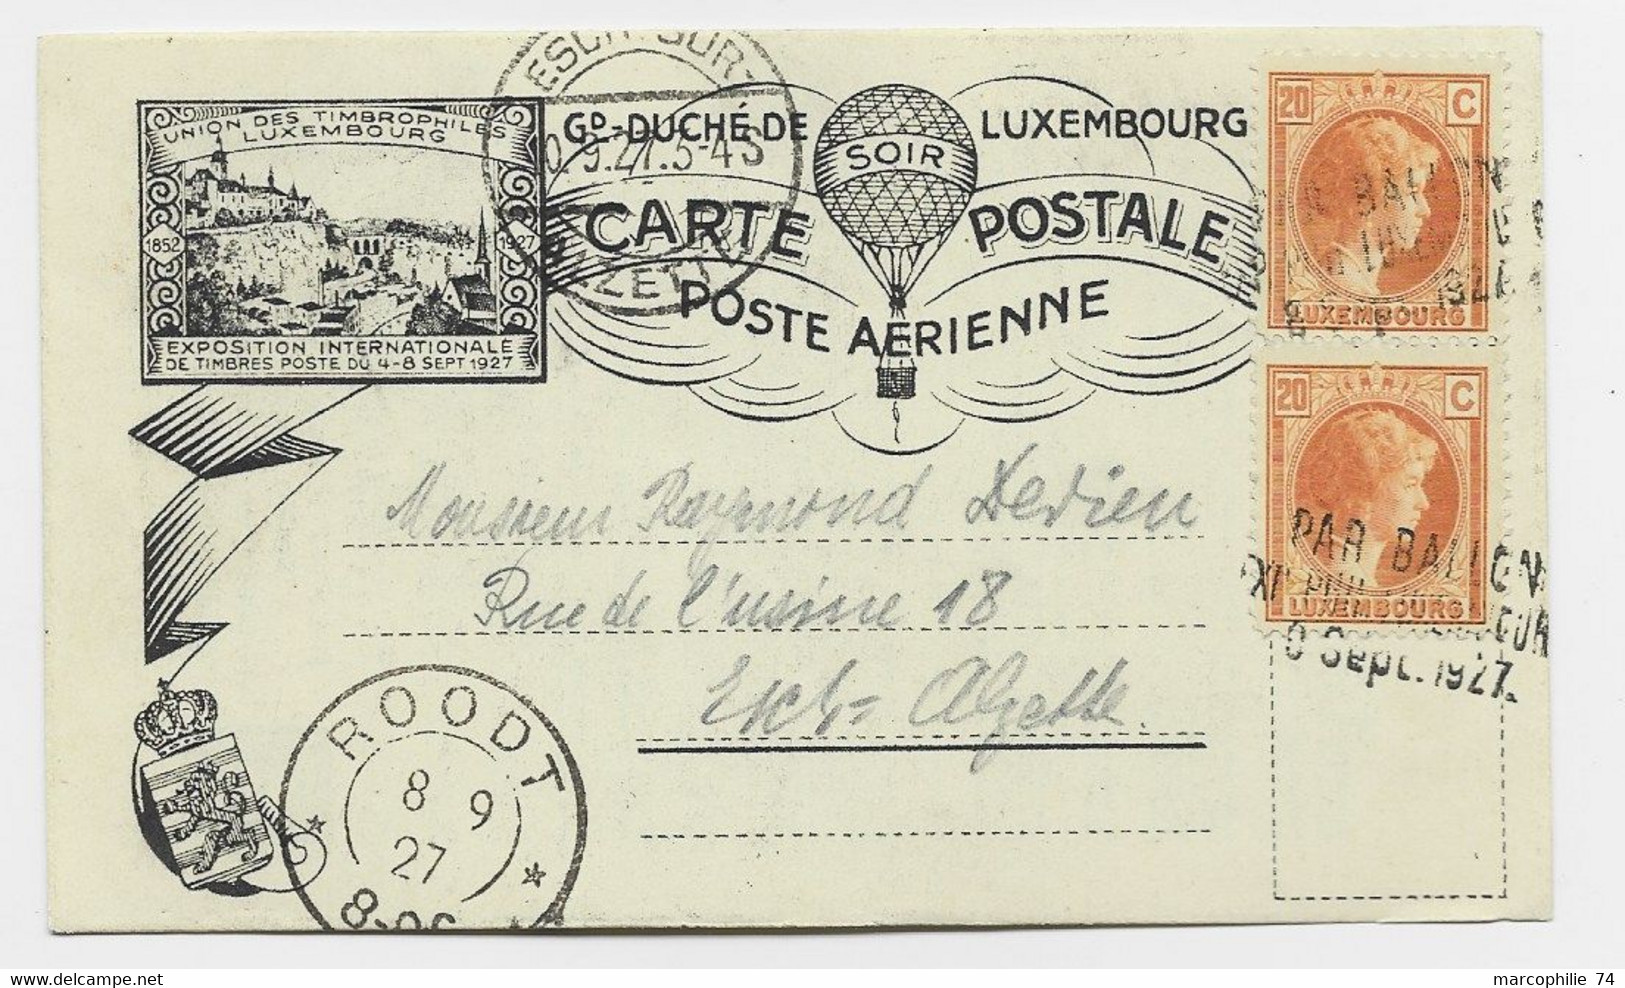 LUXEMBOURG 20CX2 PETITE CARTE COVER CARD POSTE AERIENNE PAR BALLON 9 SEPT 1927 - Covers & Documents